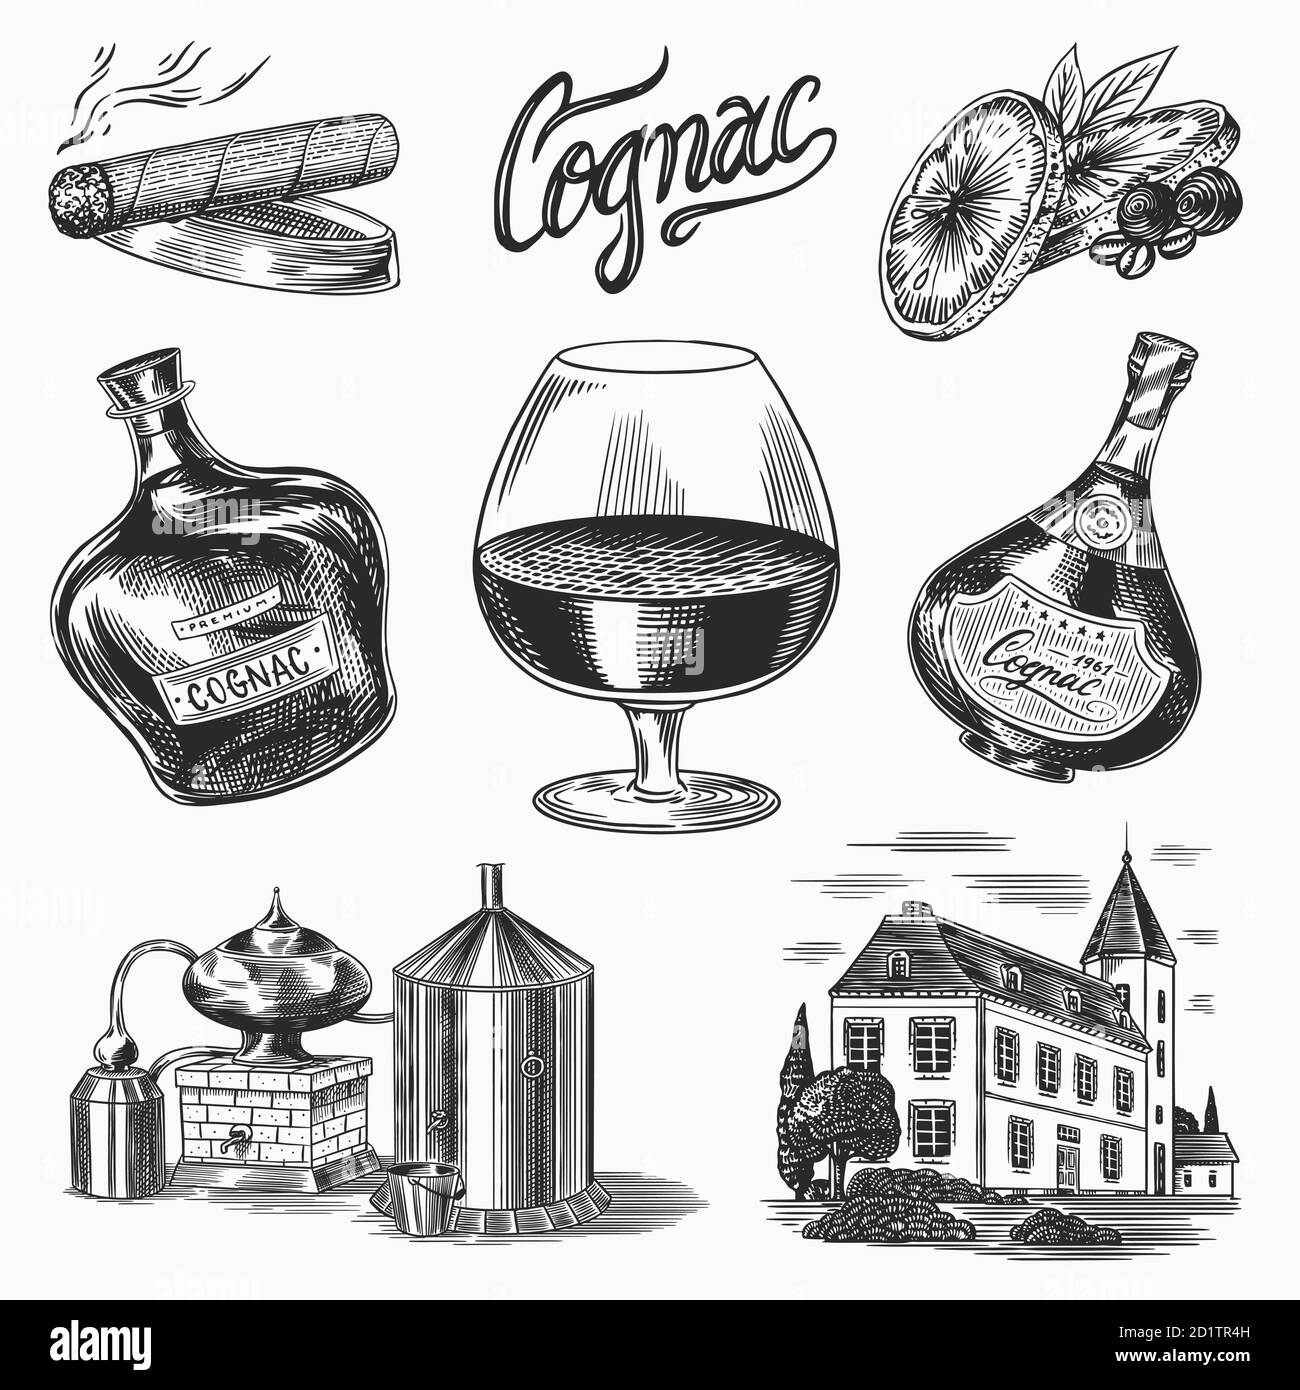 Cognac et verre. Bouteilles avec étiquettes, cigare et cocktail, bonbons et ferme, chocolat et homme. Dessin vintage gravé à la main. Style de coupe de bois Illustration de Vecteur